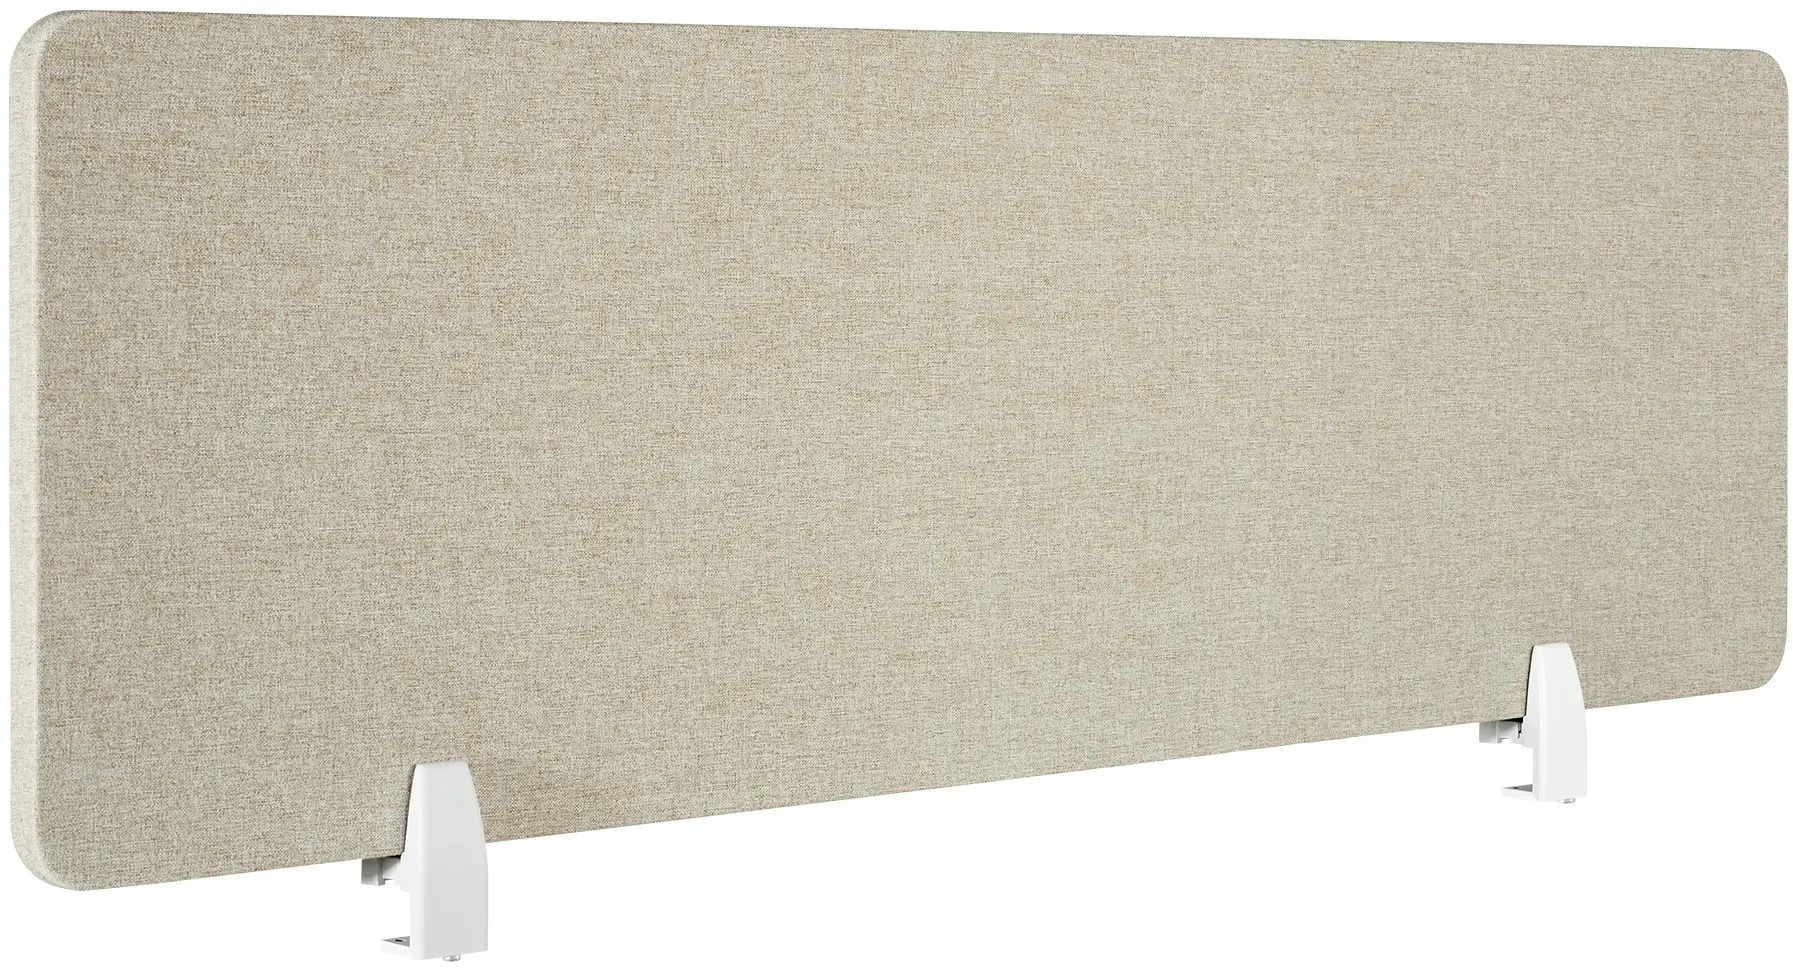 tectake Schreibtisch Trennwand Noisy mit abgerundeten Ecken - 130 x 40 cm, beige